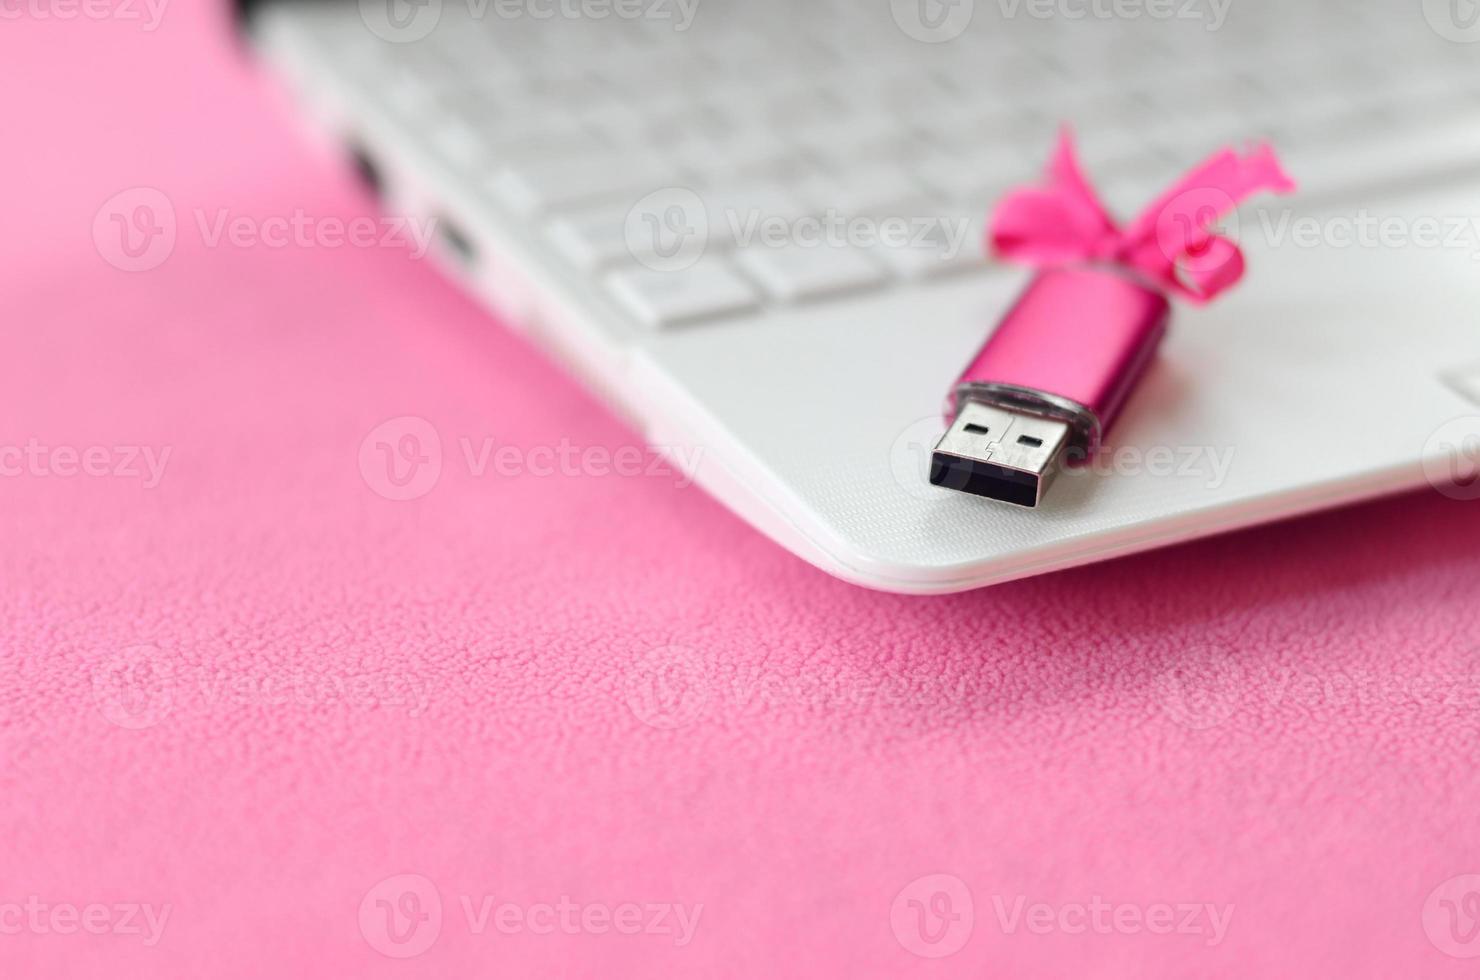 la tarjeta de memoria flash usb de color rosa brillante con un lazo rosa se encuentra sobre una manta de tela suave y peluda de color rosa claro junto a una computadora portátil blanca. diseño clásico de regalo femenino para una tarjeta de memoria foto